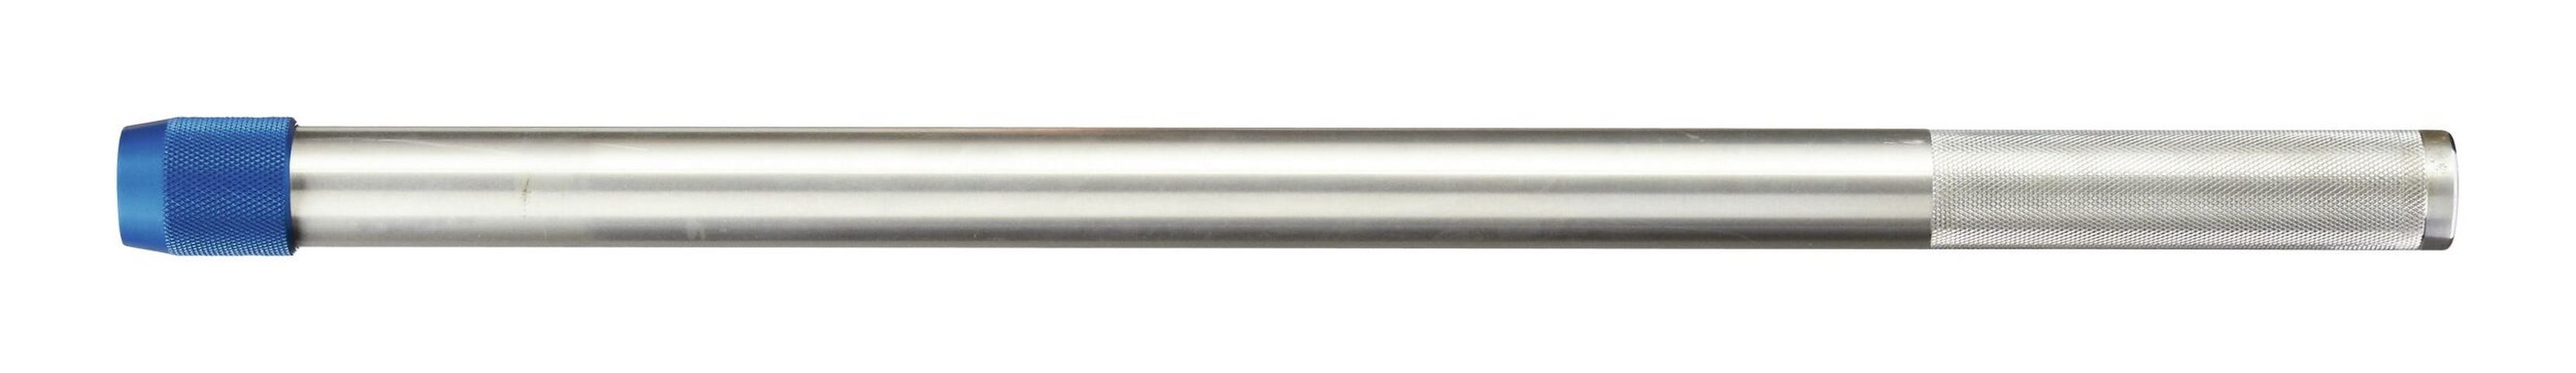 Gedore Drehmomentschlüssel, Aufsteckrohr Aluminium für Drehmomentschlüssel Dremometer 762 mm | Drehmomentschlüssel